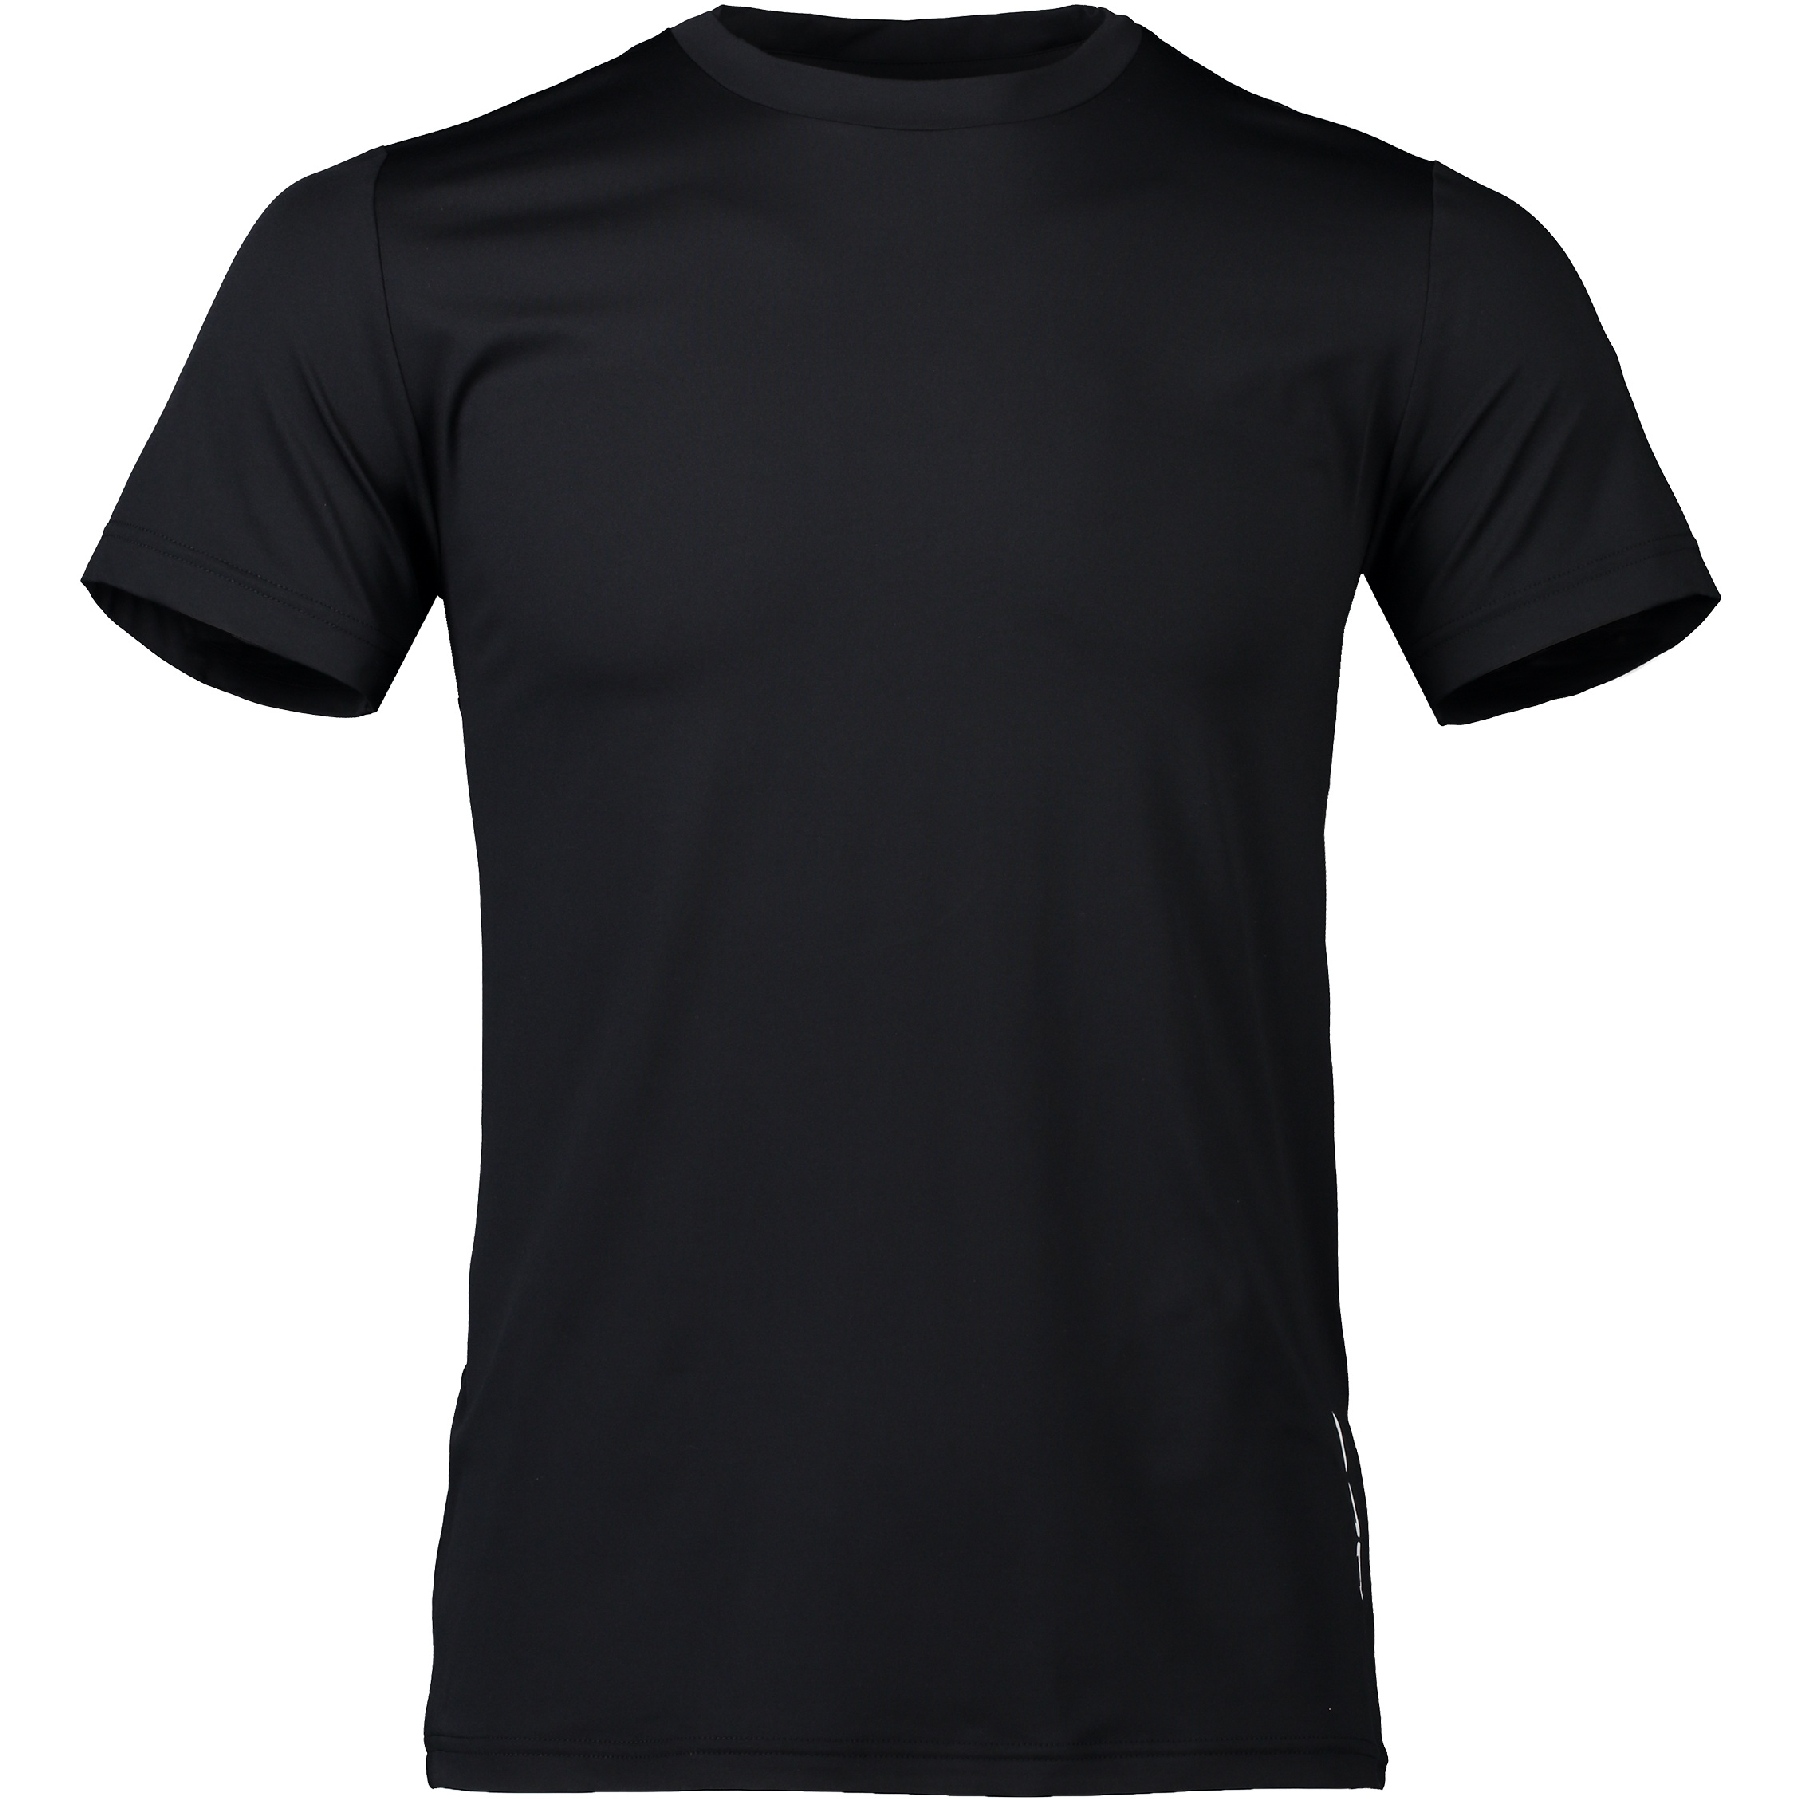 Produktbild von POC Reform Enduro Light T-Shirt Herren - 1002 Uranium Black